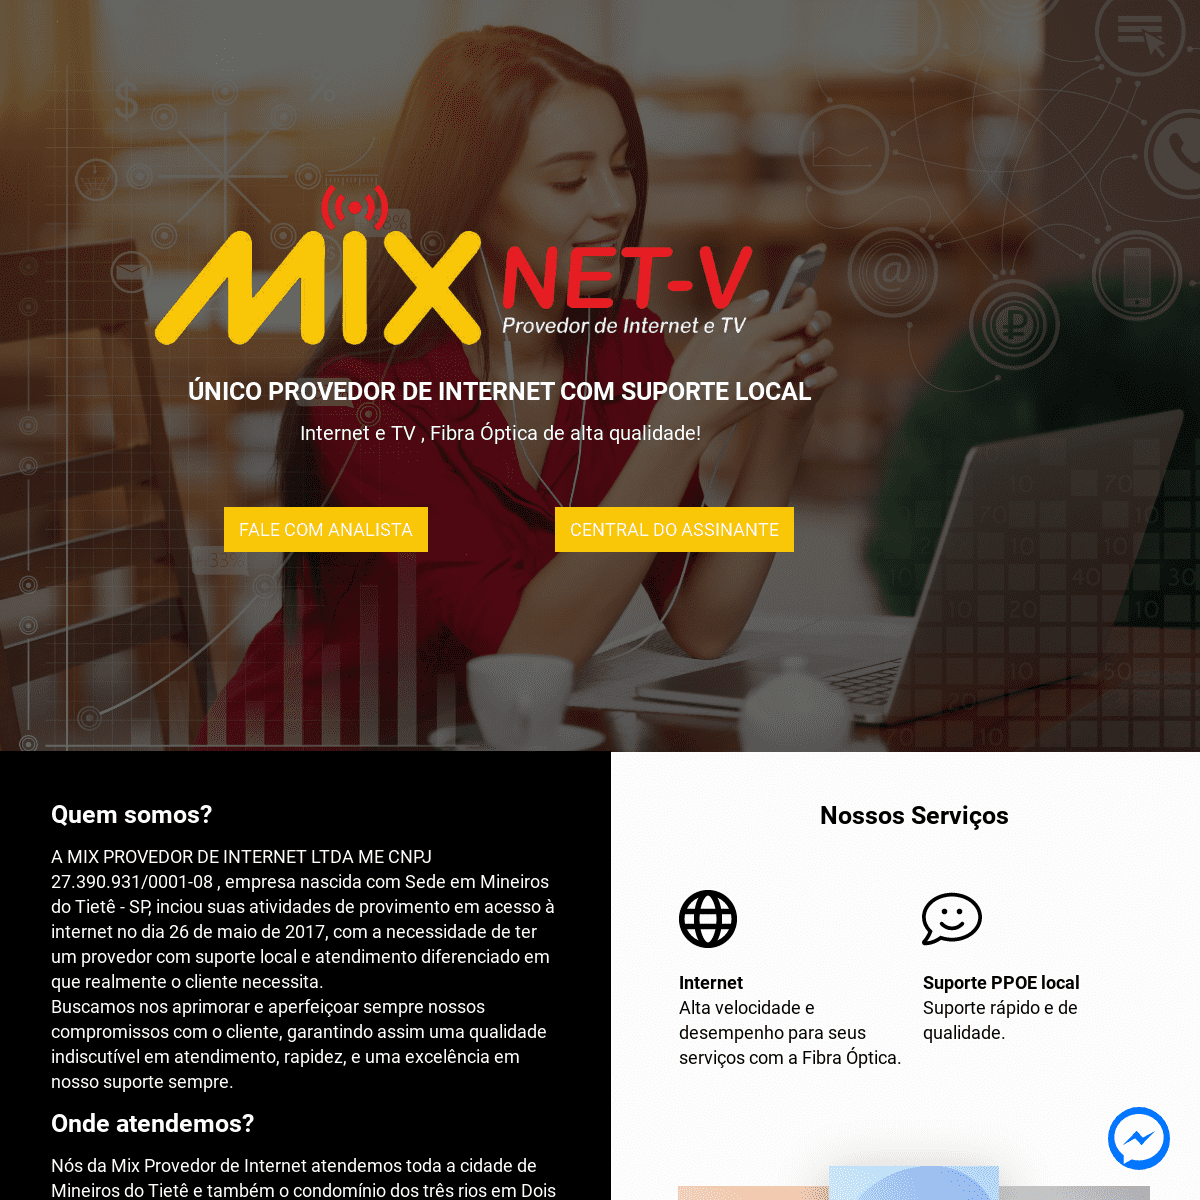 A complete backup of https://mixnetv.com.br